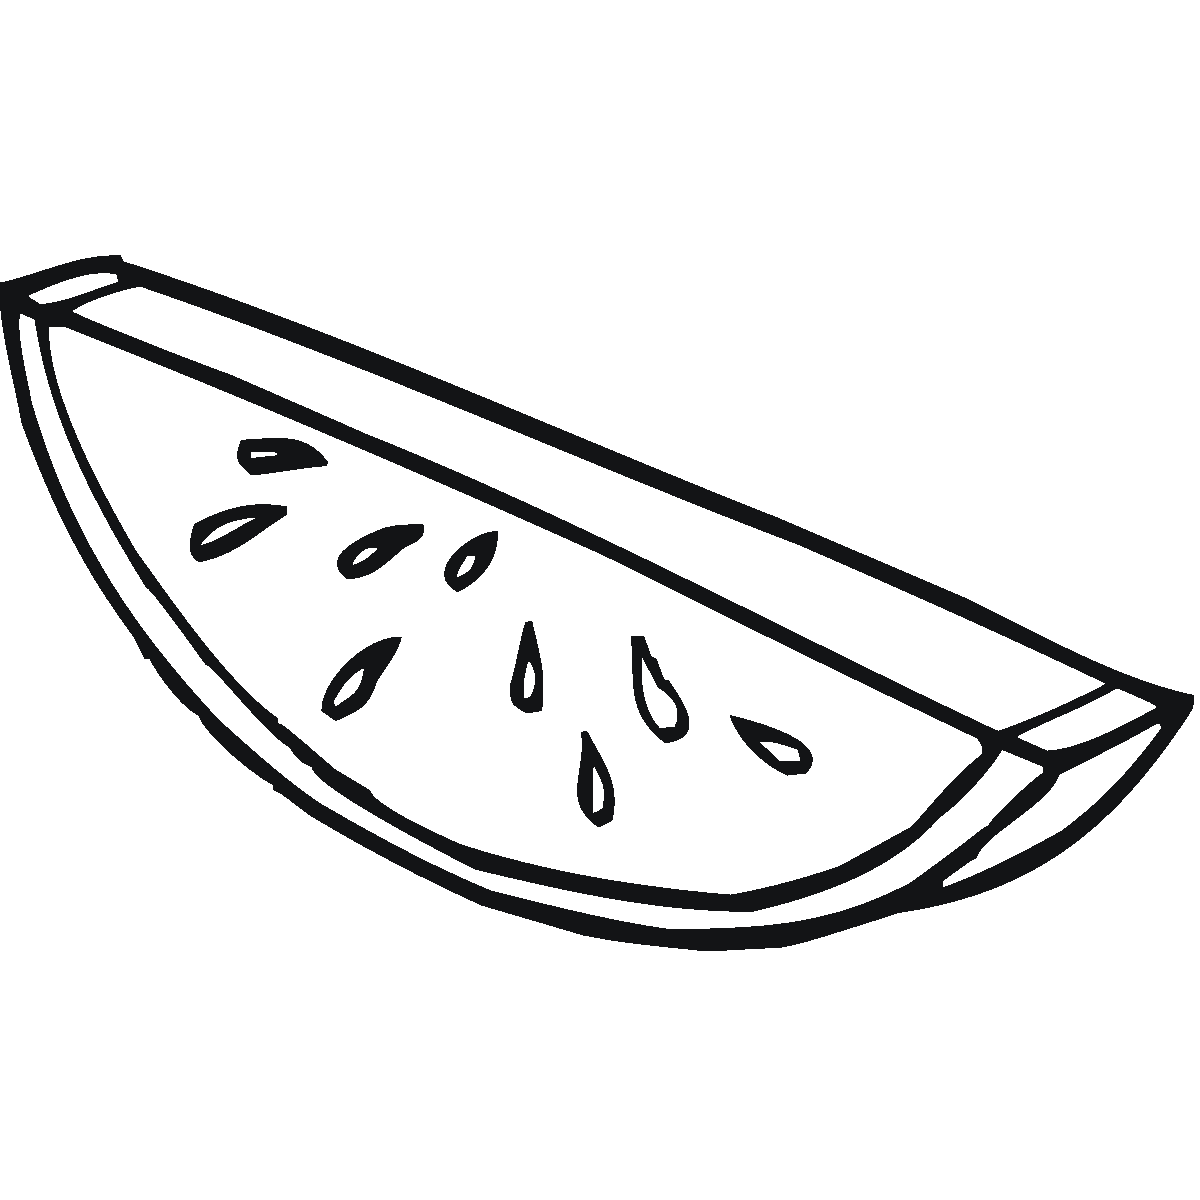 Pedaco pequeno de melancia